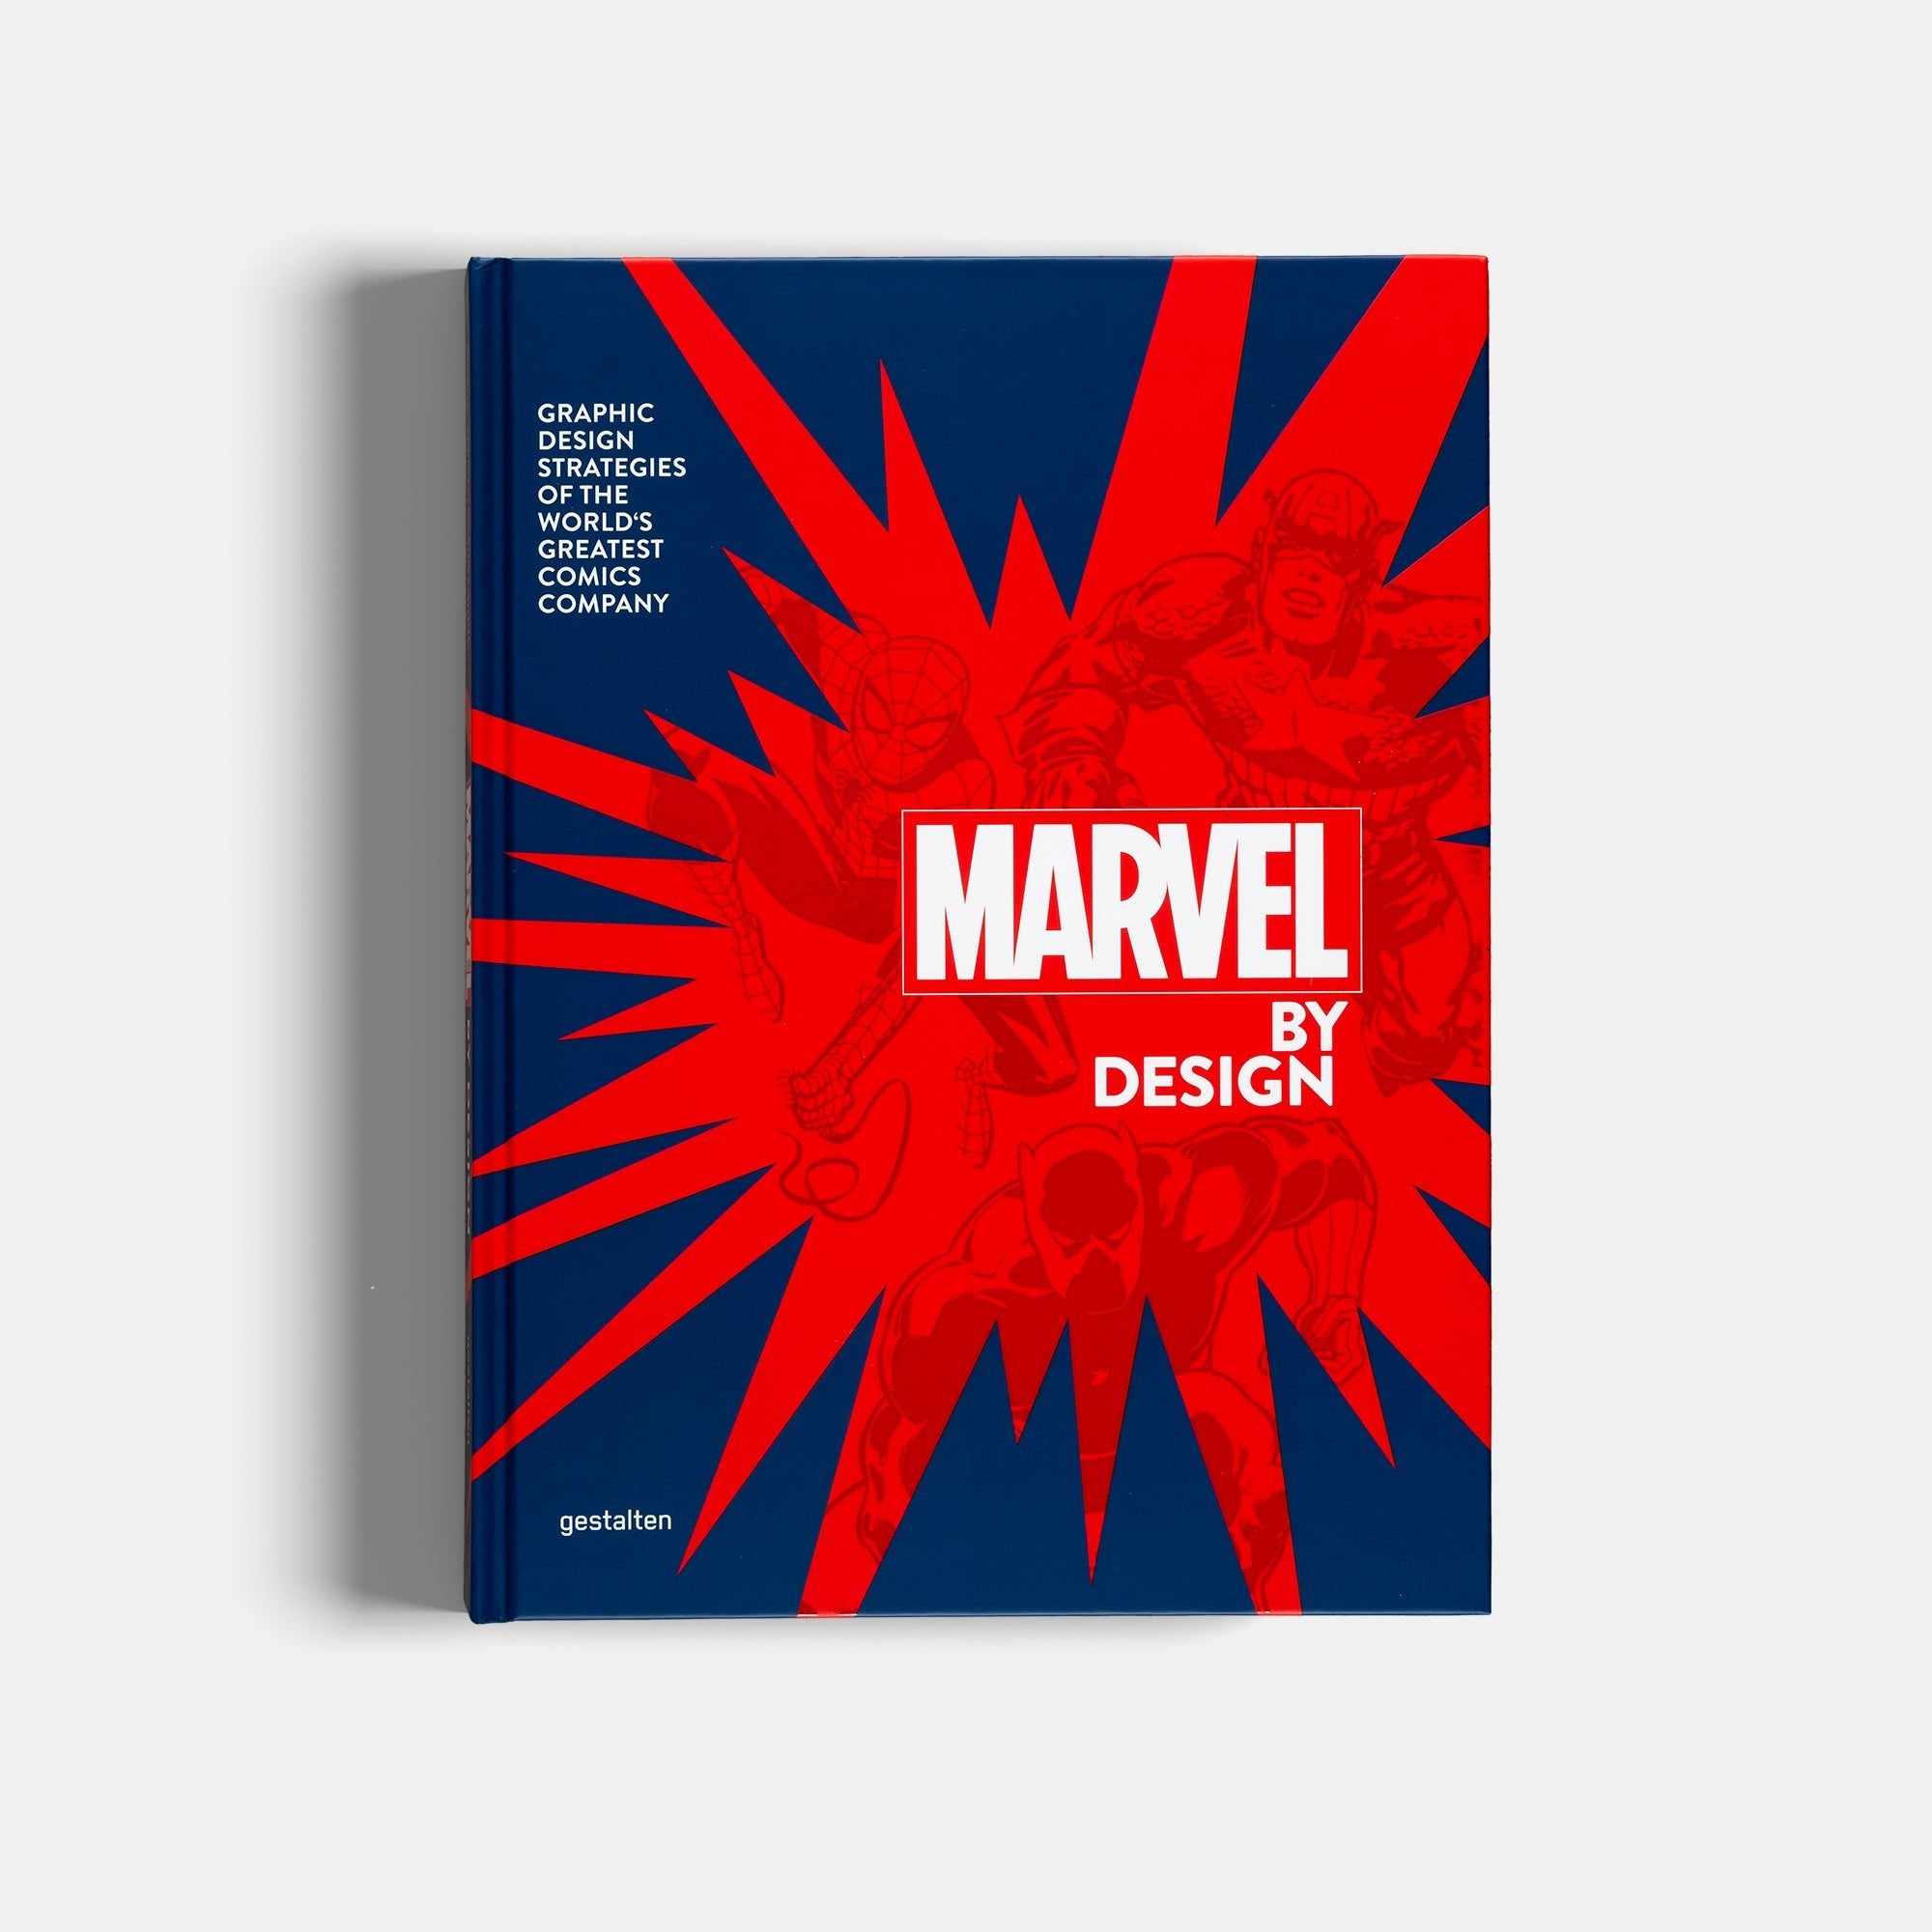 Marvel by Design